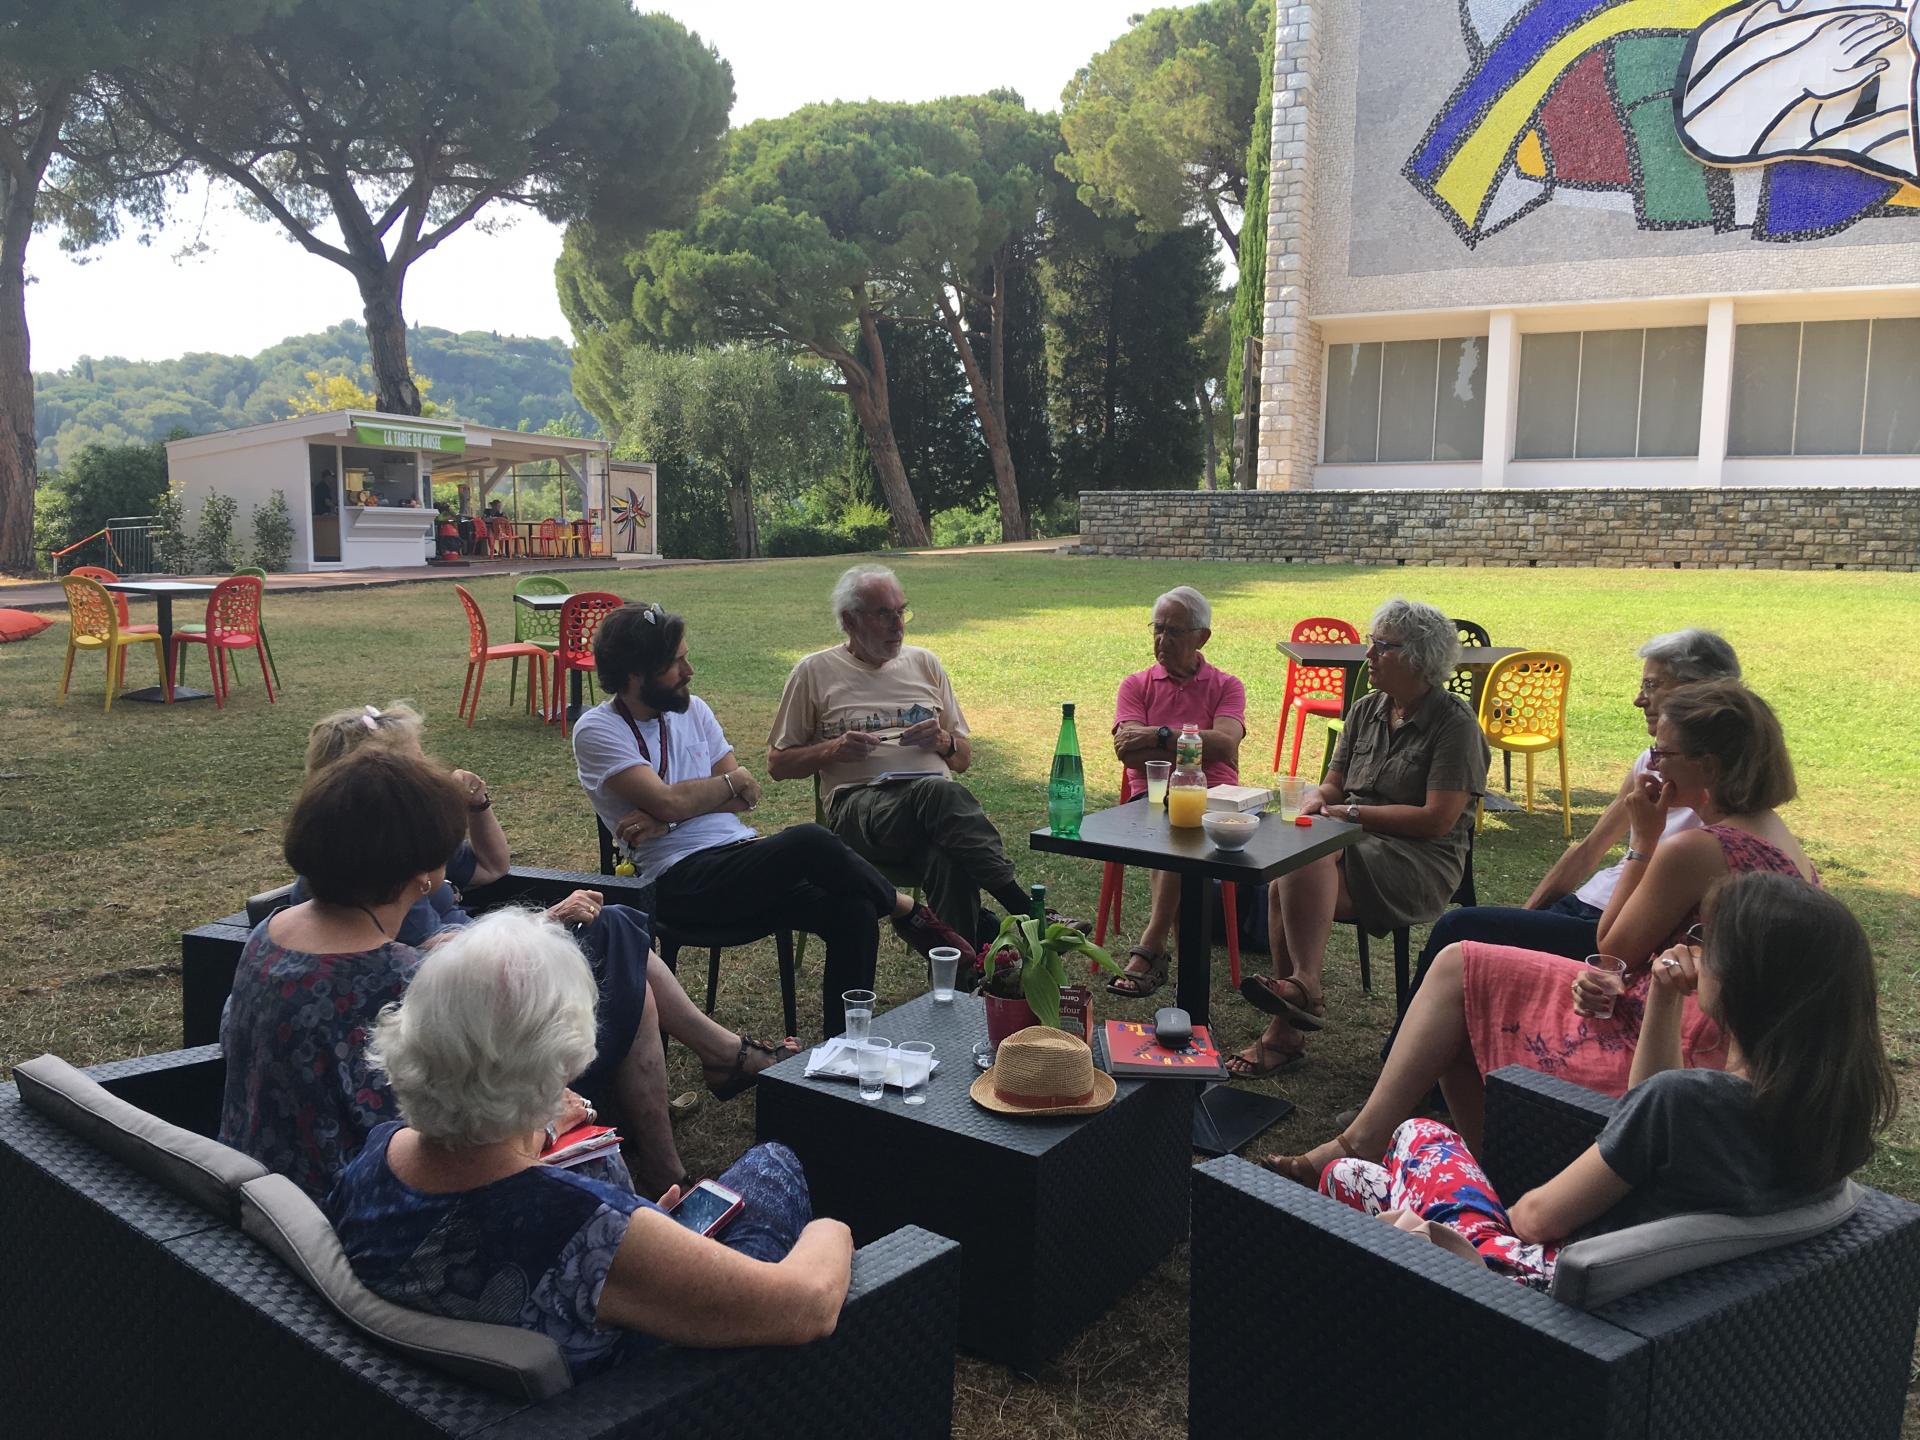 Séance « Café lecteurs adultes » dans le parc du musée, avec l’équipe de la médiathèque communautaire Sonia-Delaunay de Biot. Photo : DR / musée national Fernand Léger, 2020.